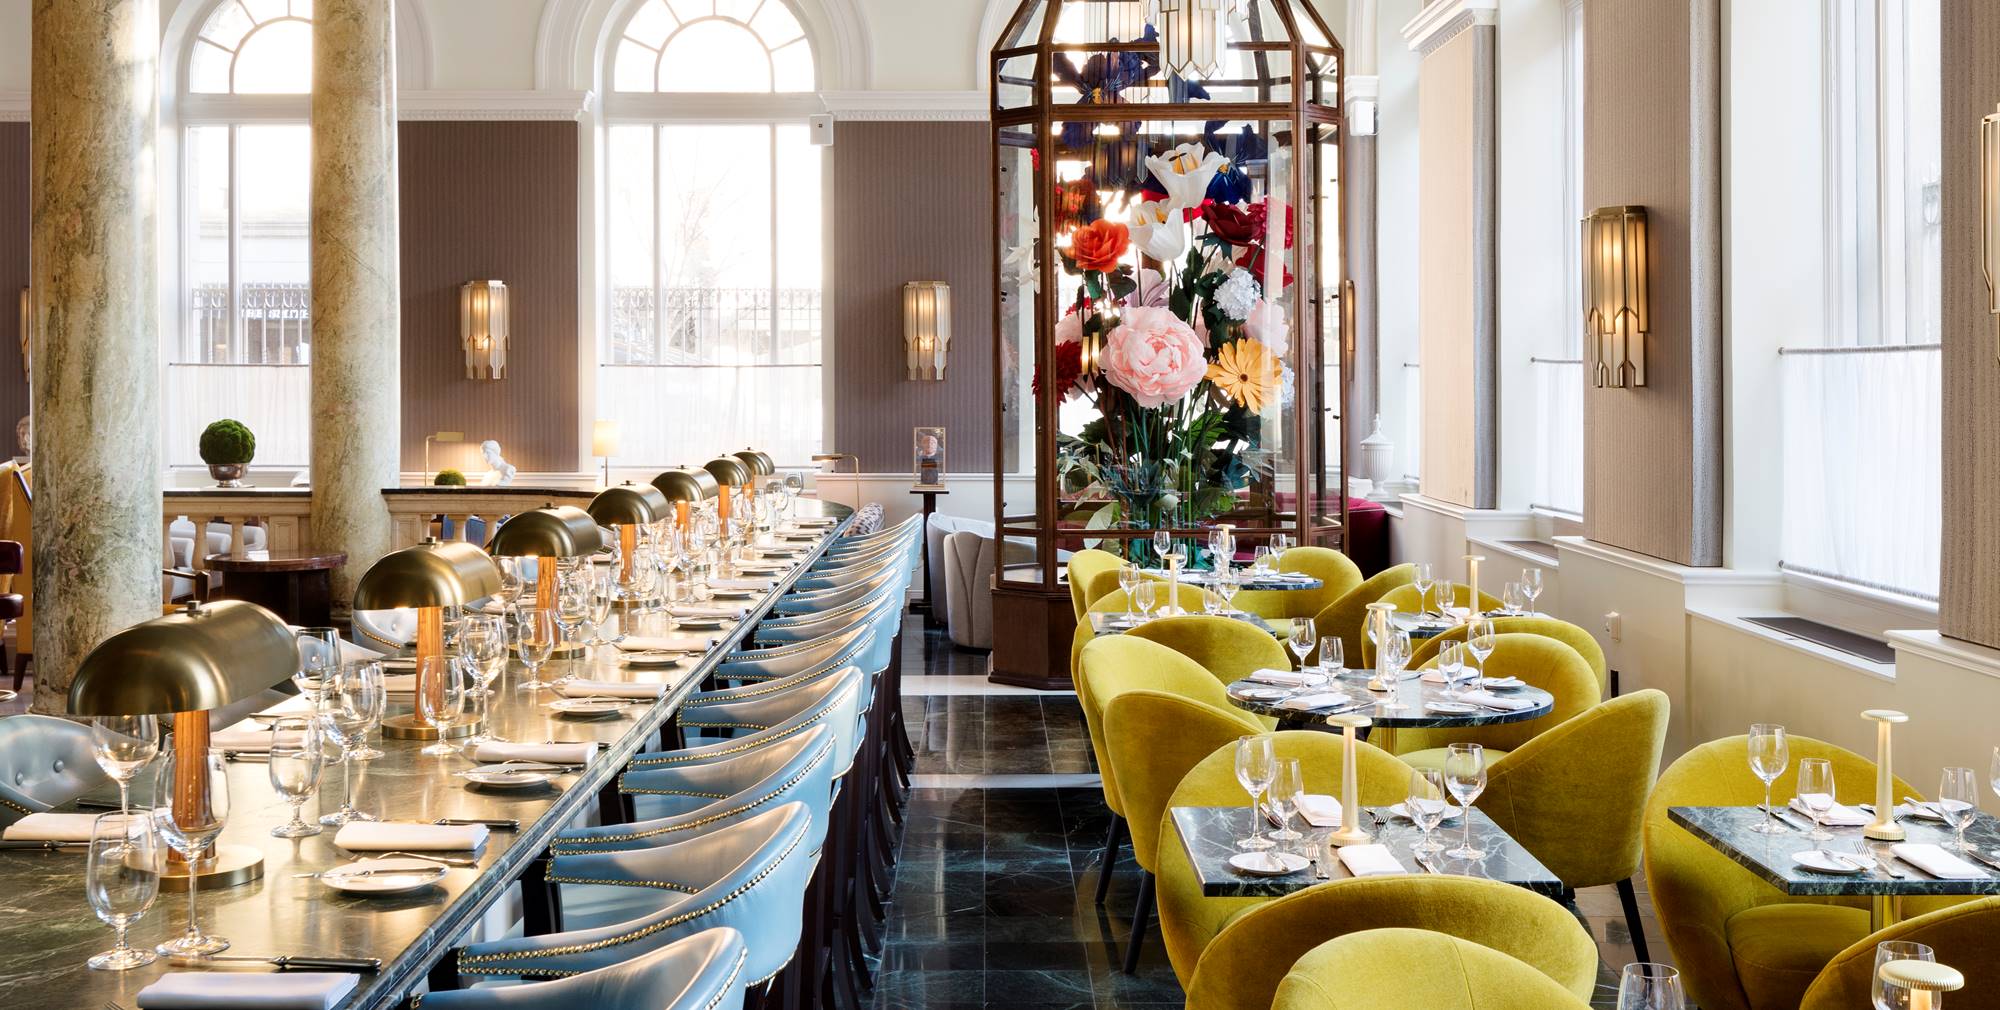 Inside Louis Vuitton's café and restaurant